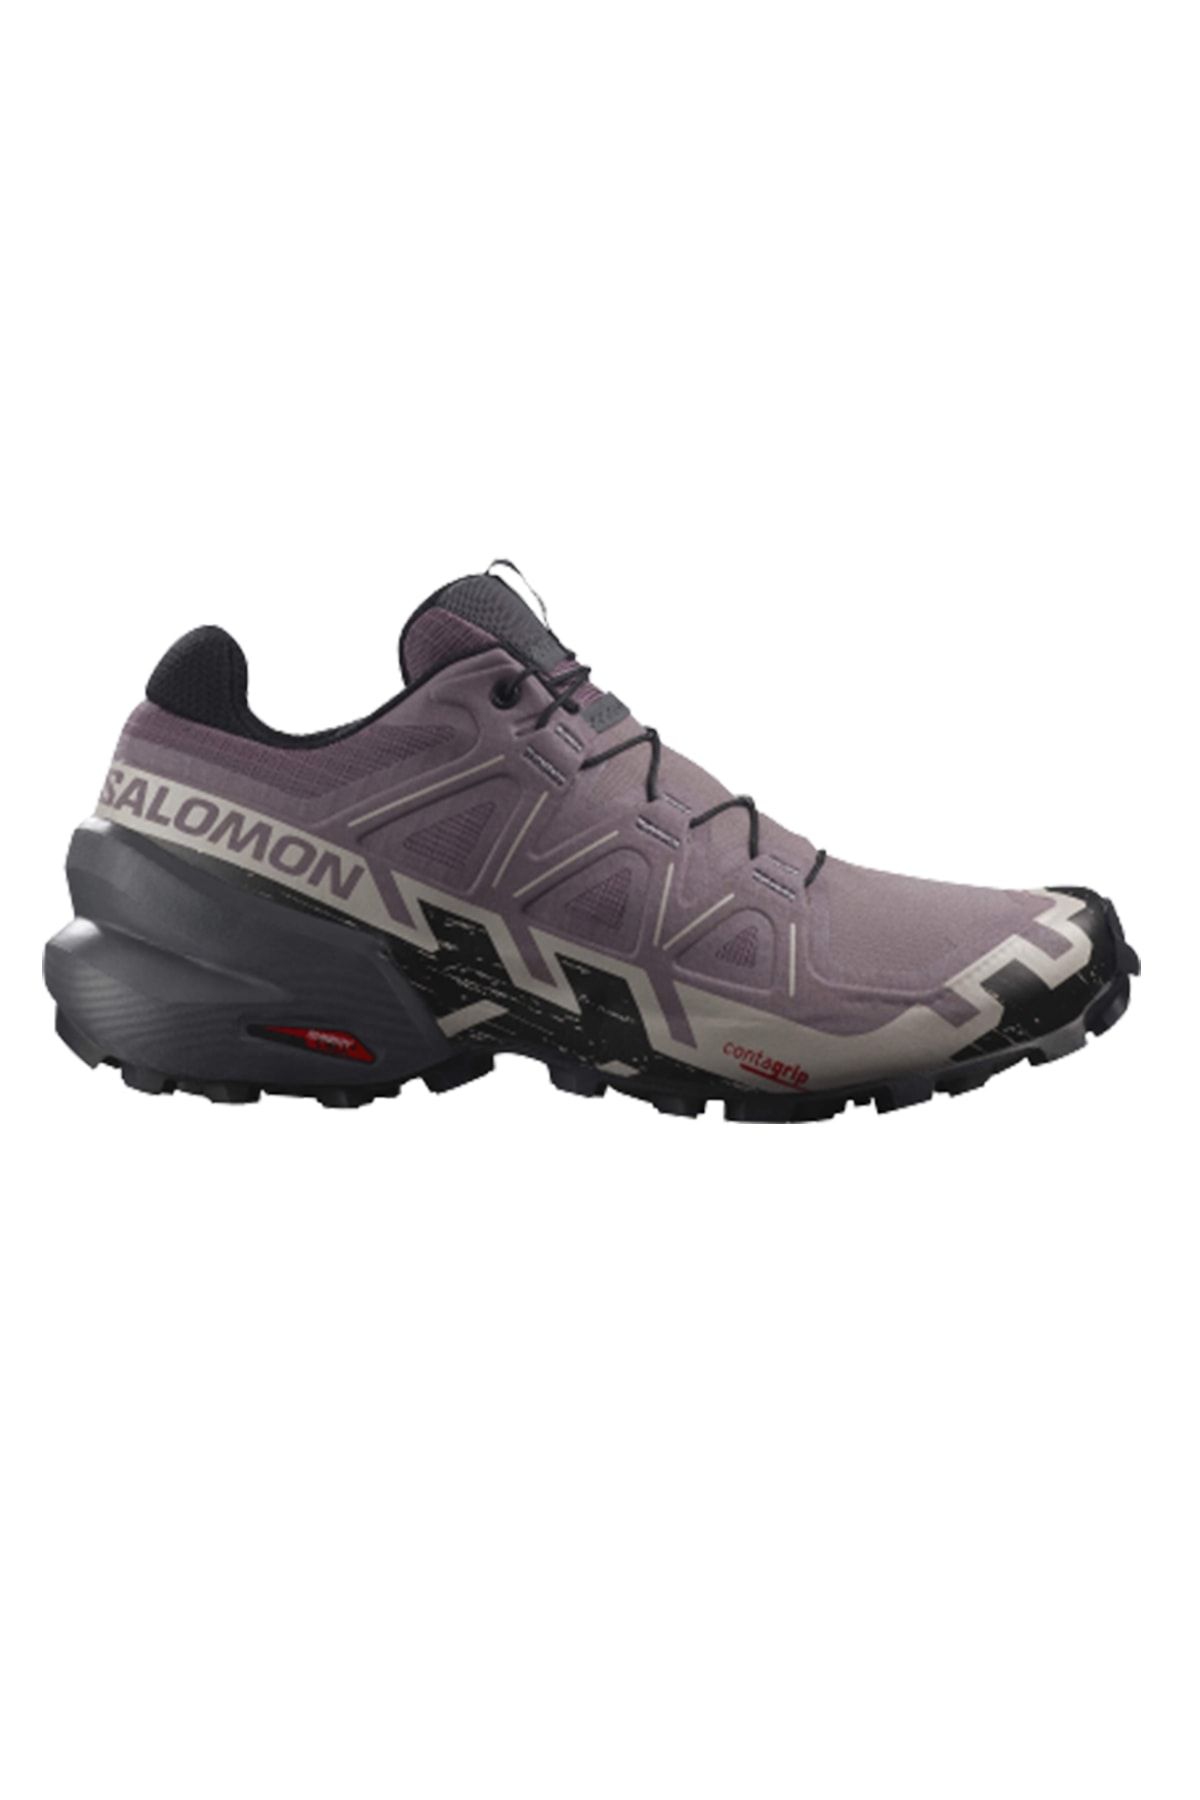 Salomon Speedcross 6 W Kadın Ayakkabı L41742900